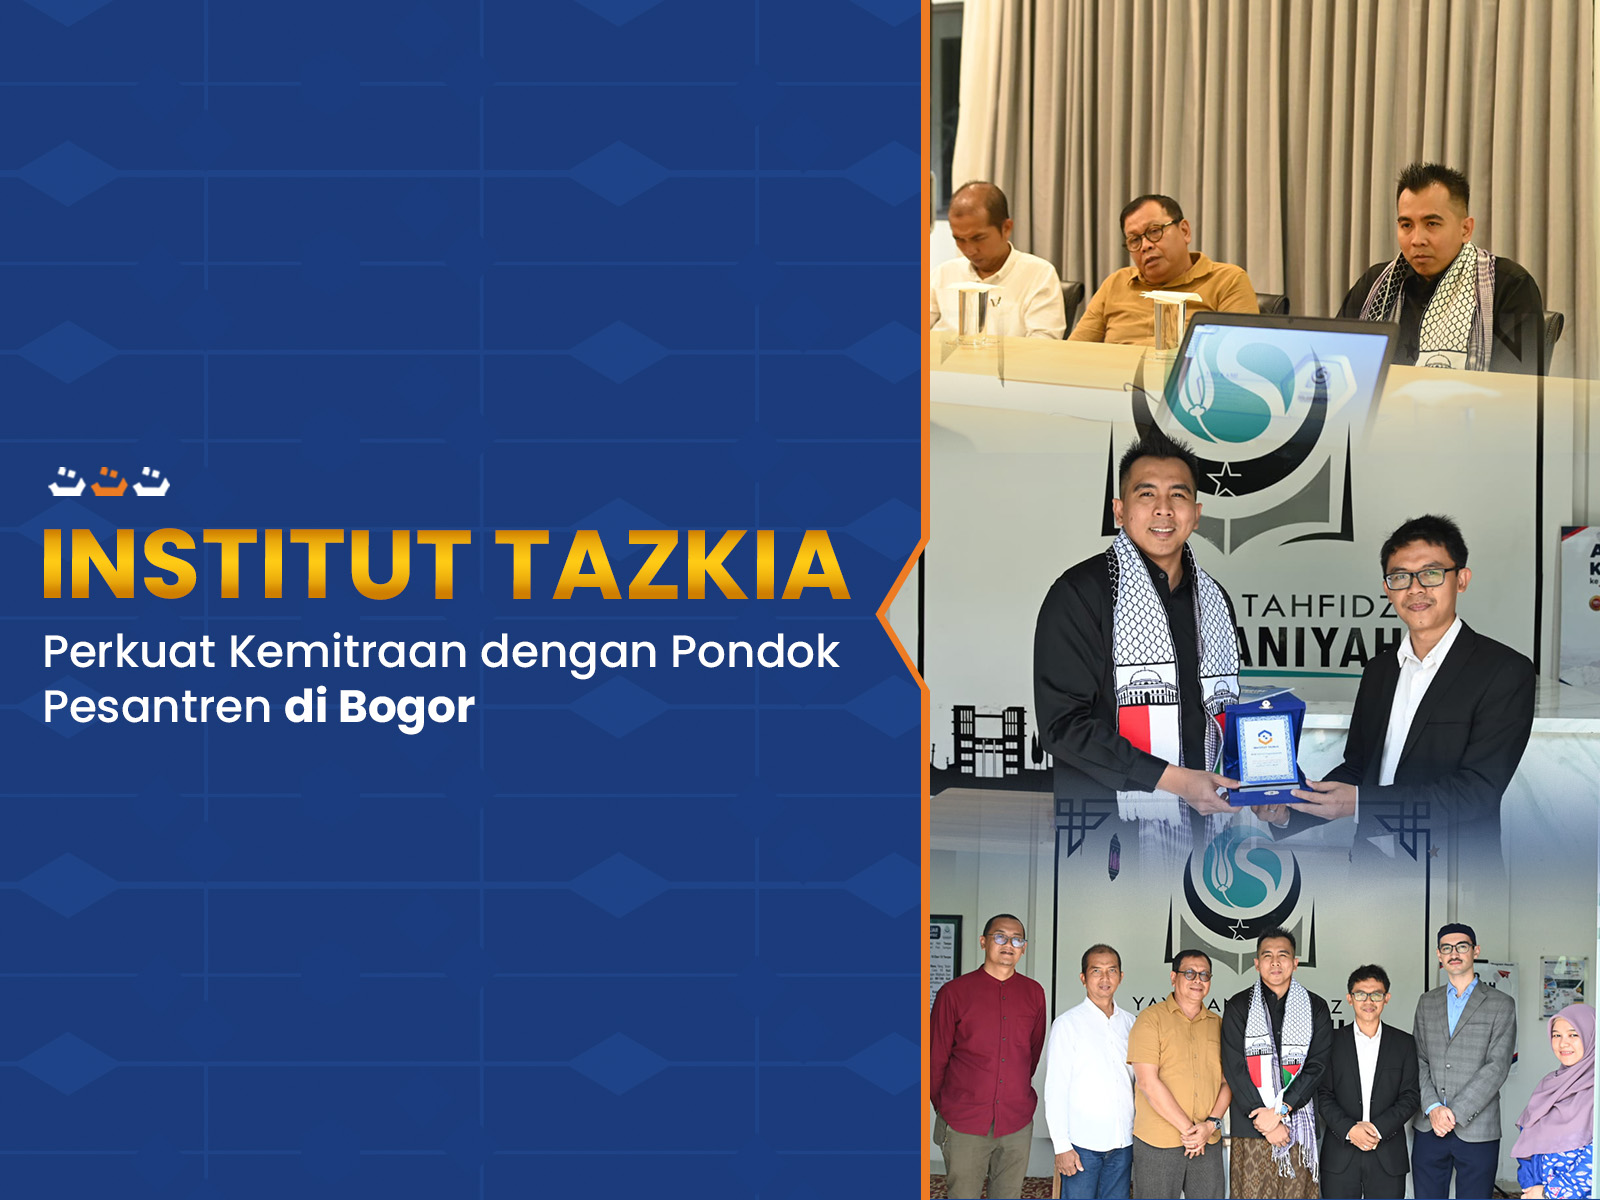 Institut_Tazkia_Perkuat_Kemitraan_dengan_Pondok_Pesantren_di_Bogor